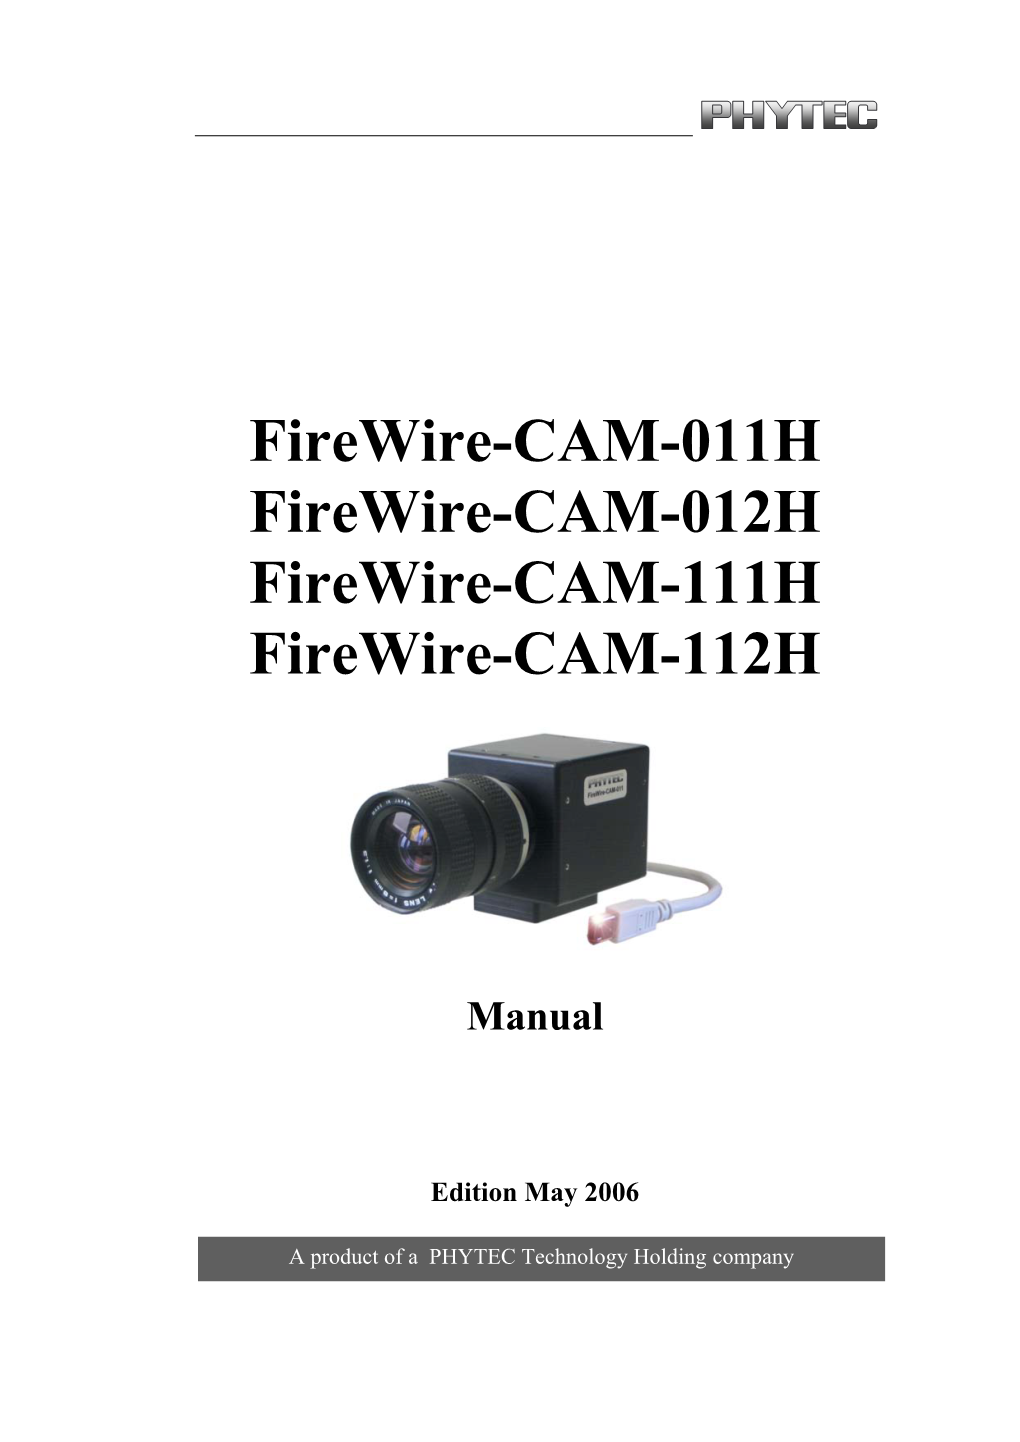 Firewire-CAM-001, CAM-002